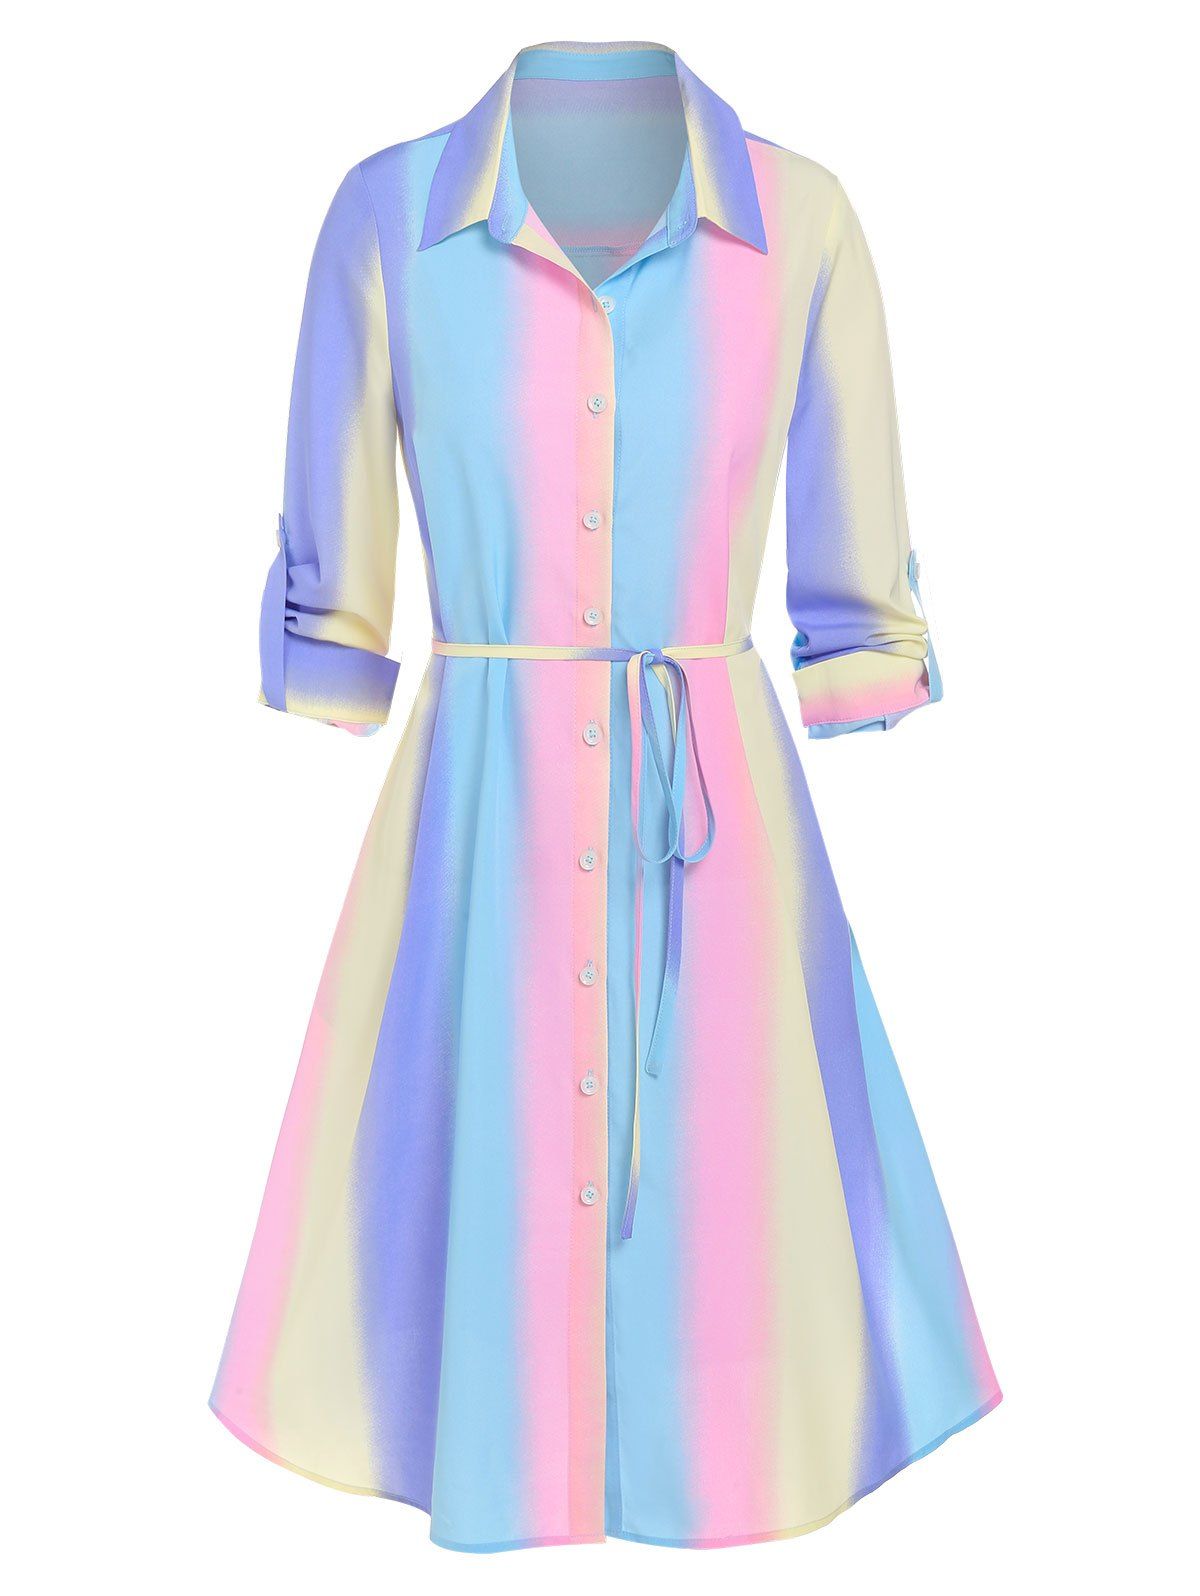 Robe Chemise à Rayure Arc-en-ciel Ceinturée à Manches Retroussées - multicolor XXL